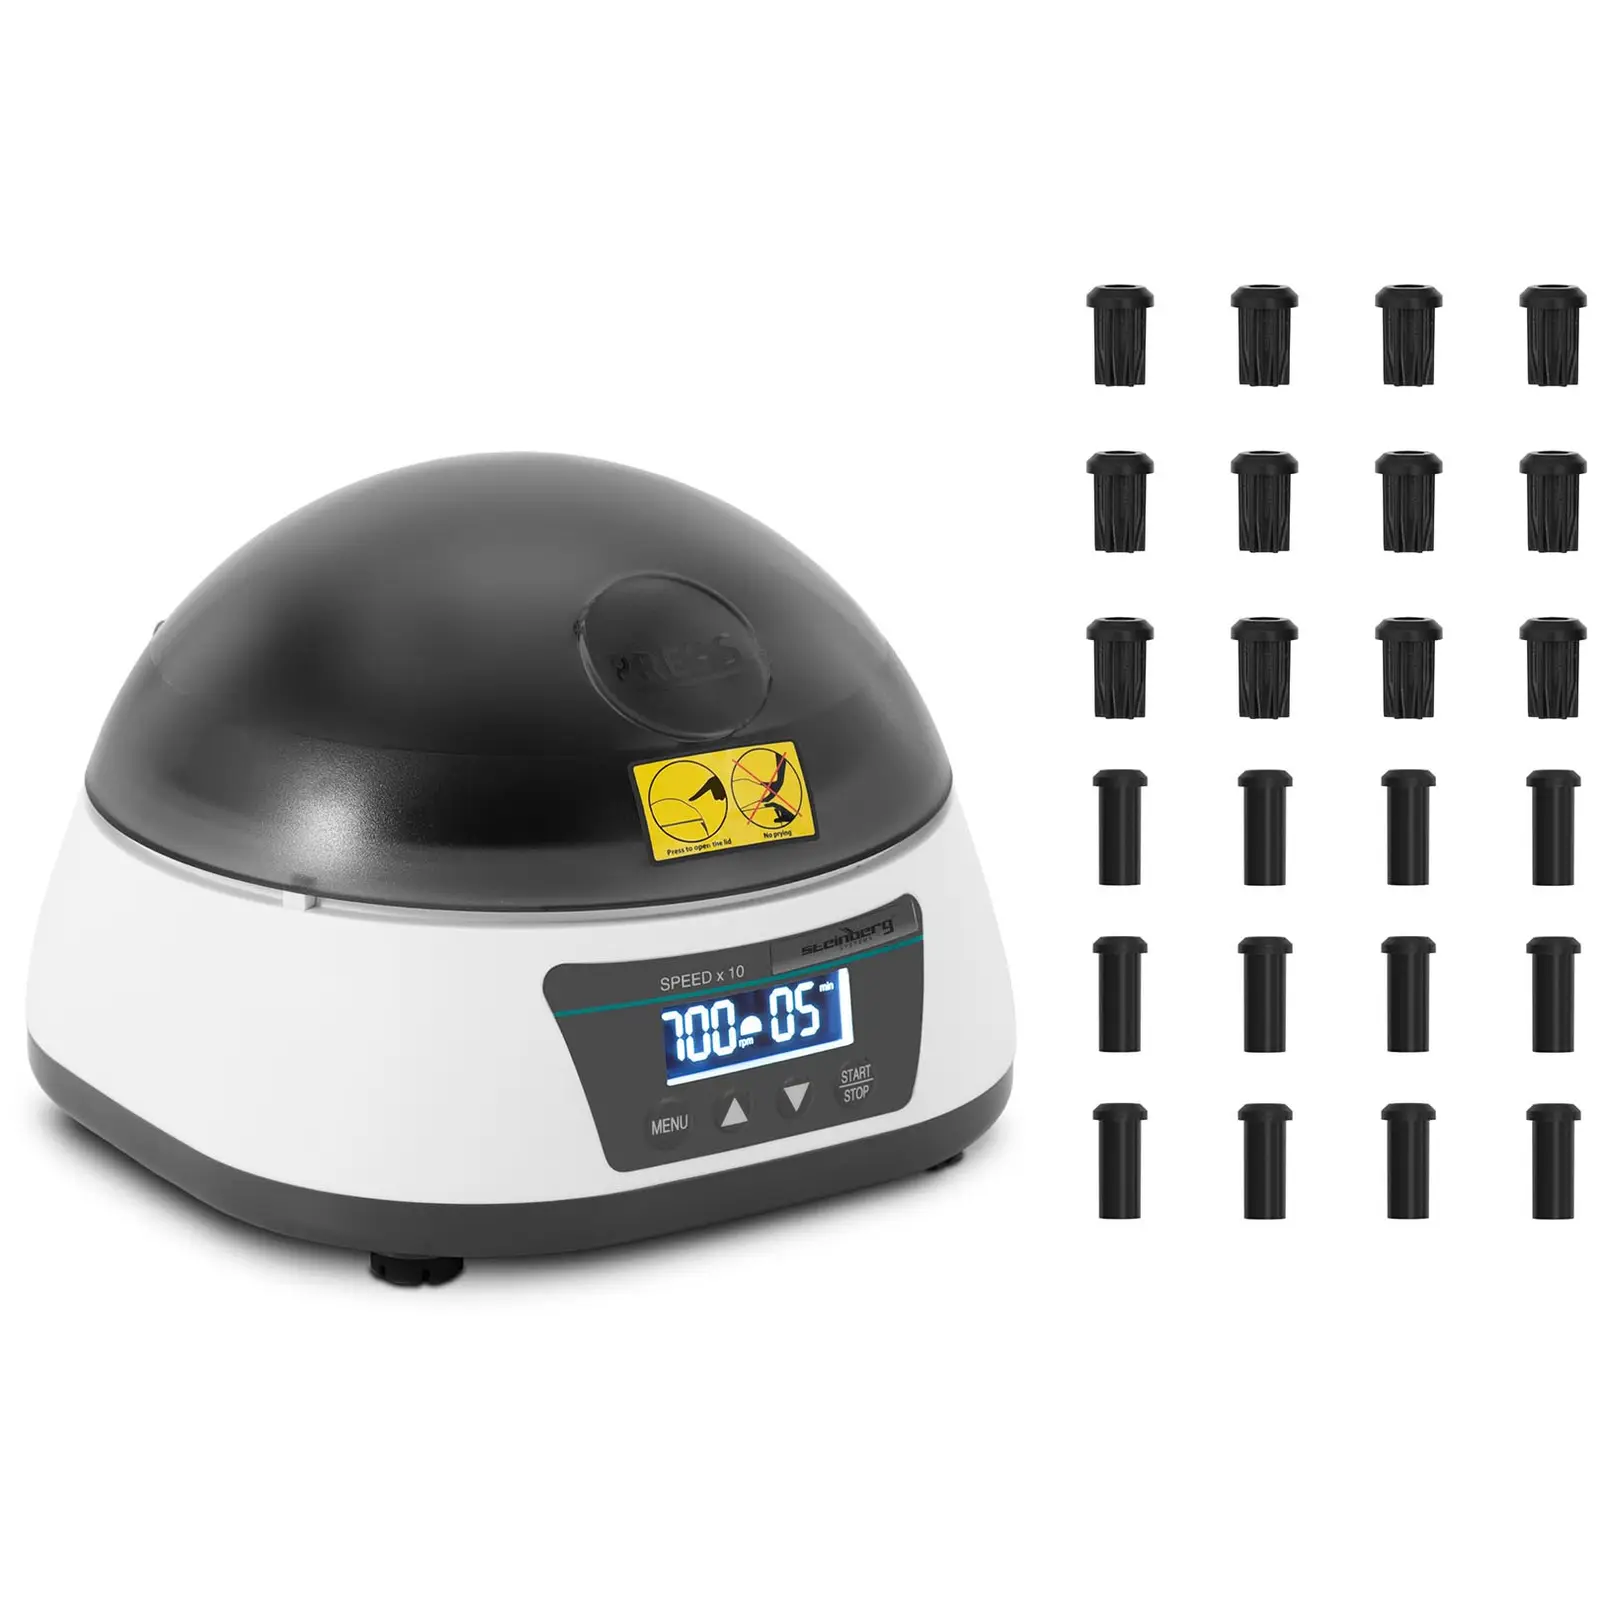 Centrifugadora de sobremesa - rotor 2 en 1 -  rpm - para 12 tubos / 4 tiras PCR - RZB 3286 xg